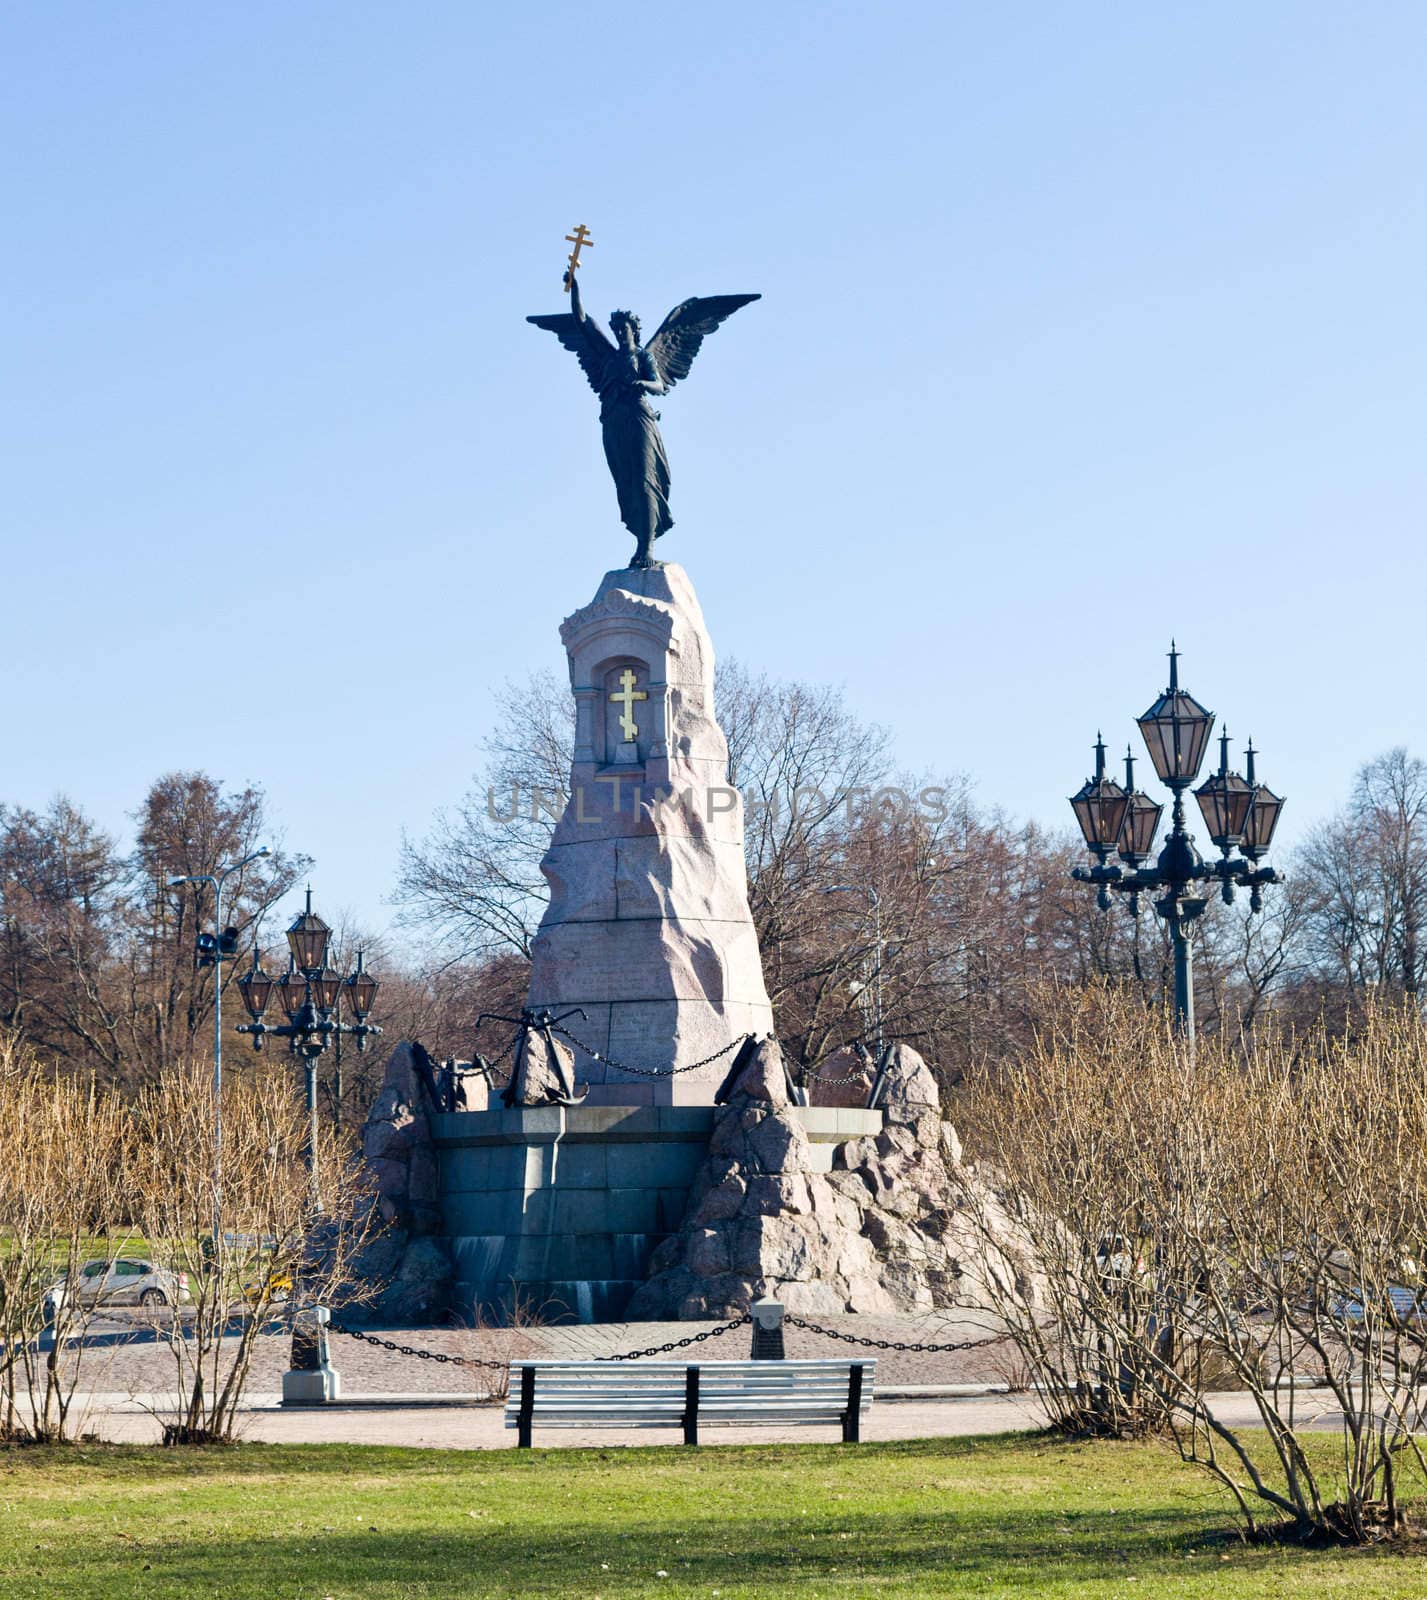 Russalka Memorial in Tallinn by steheap